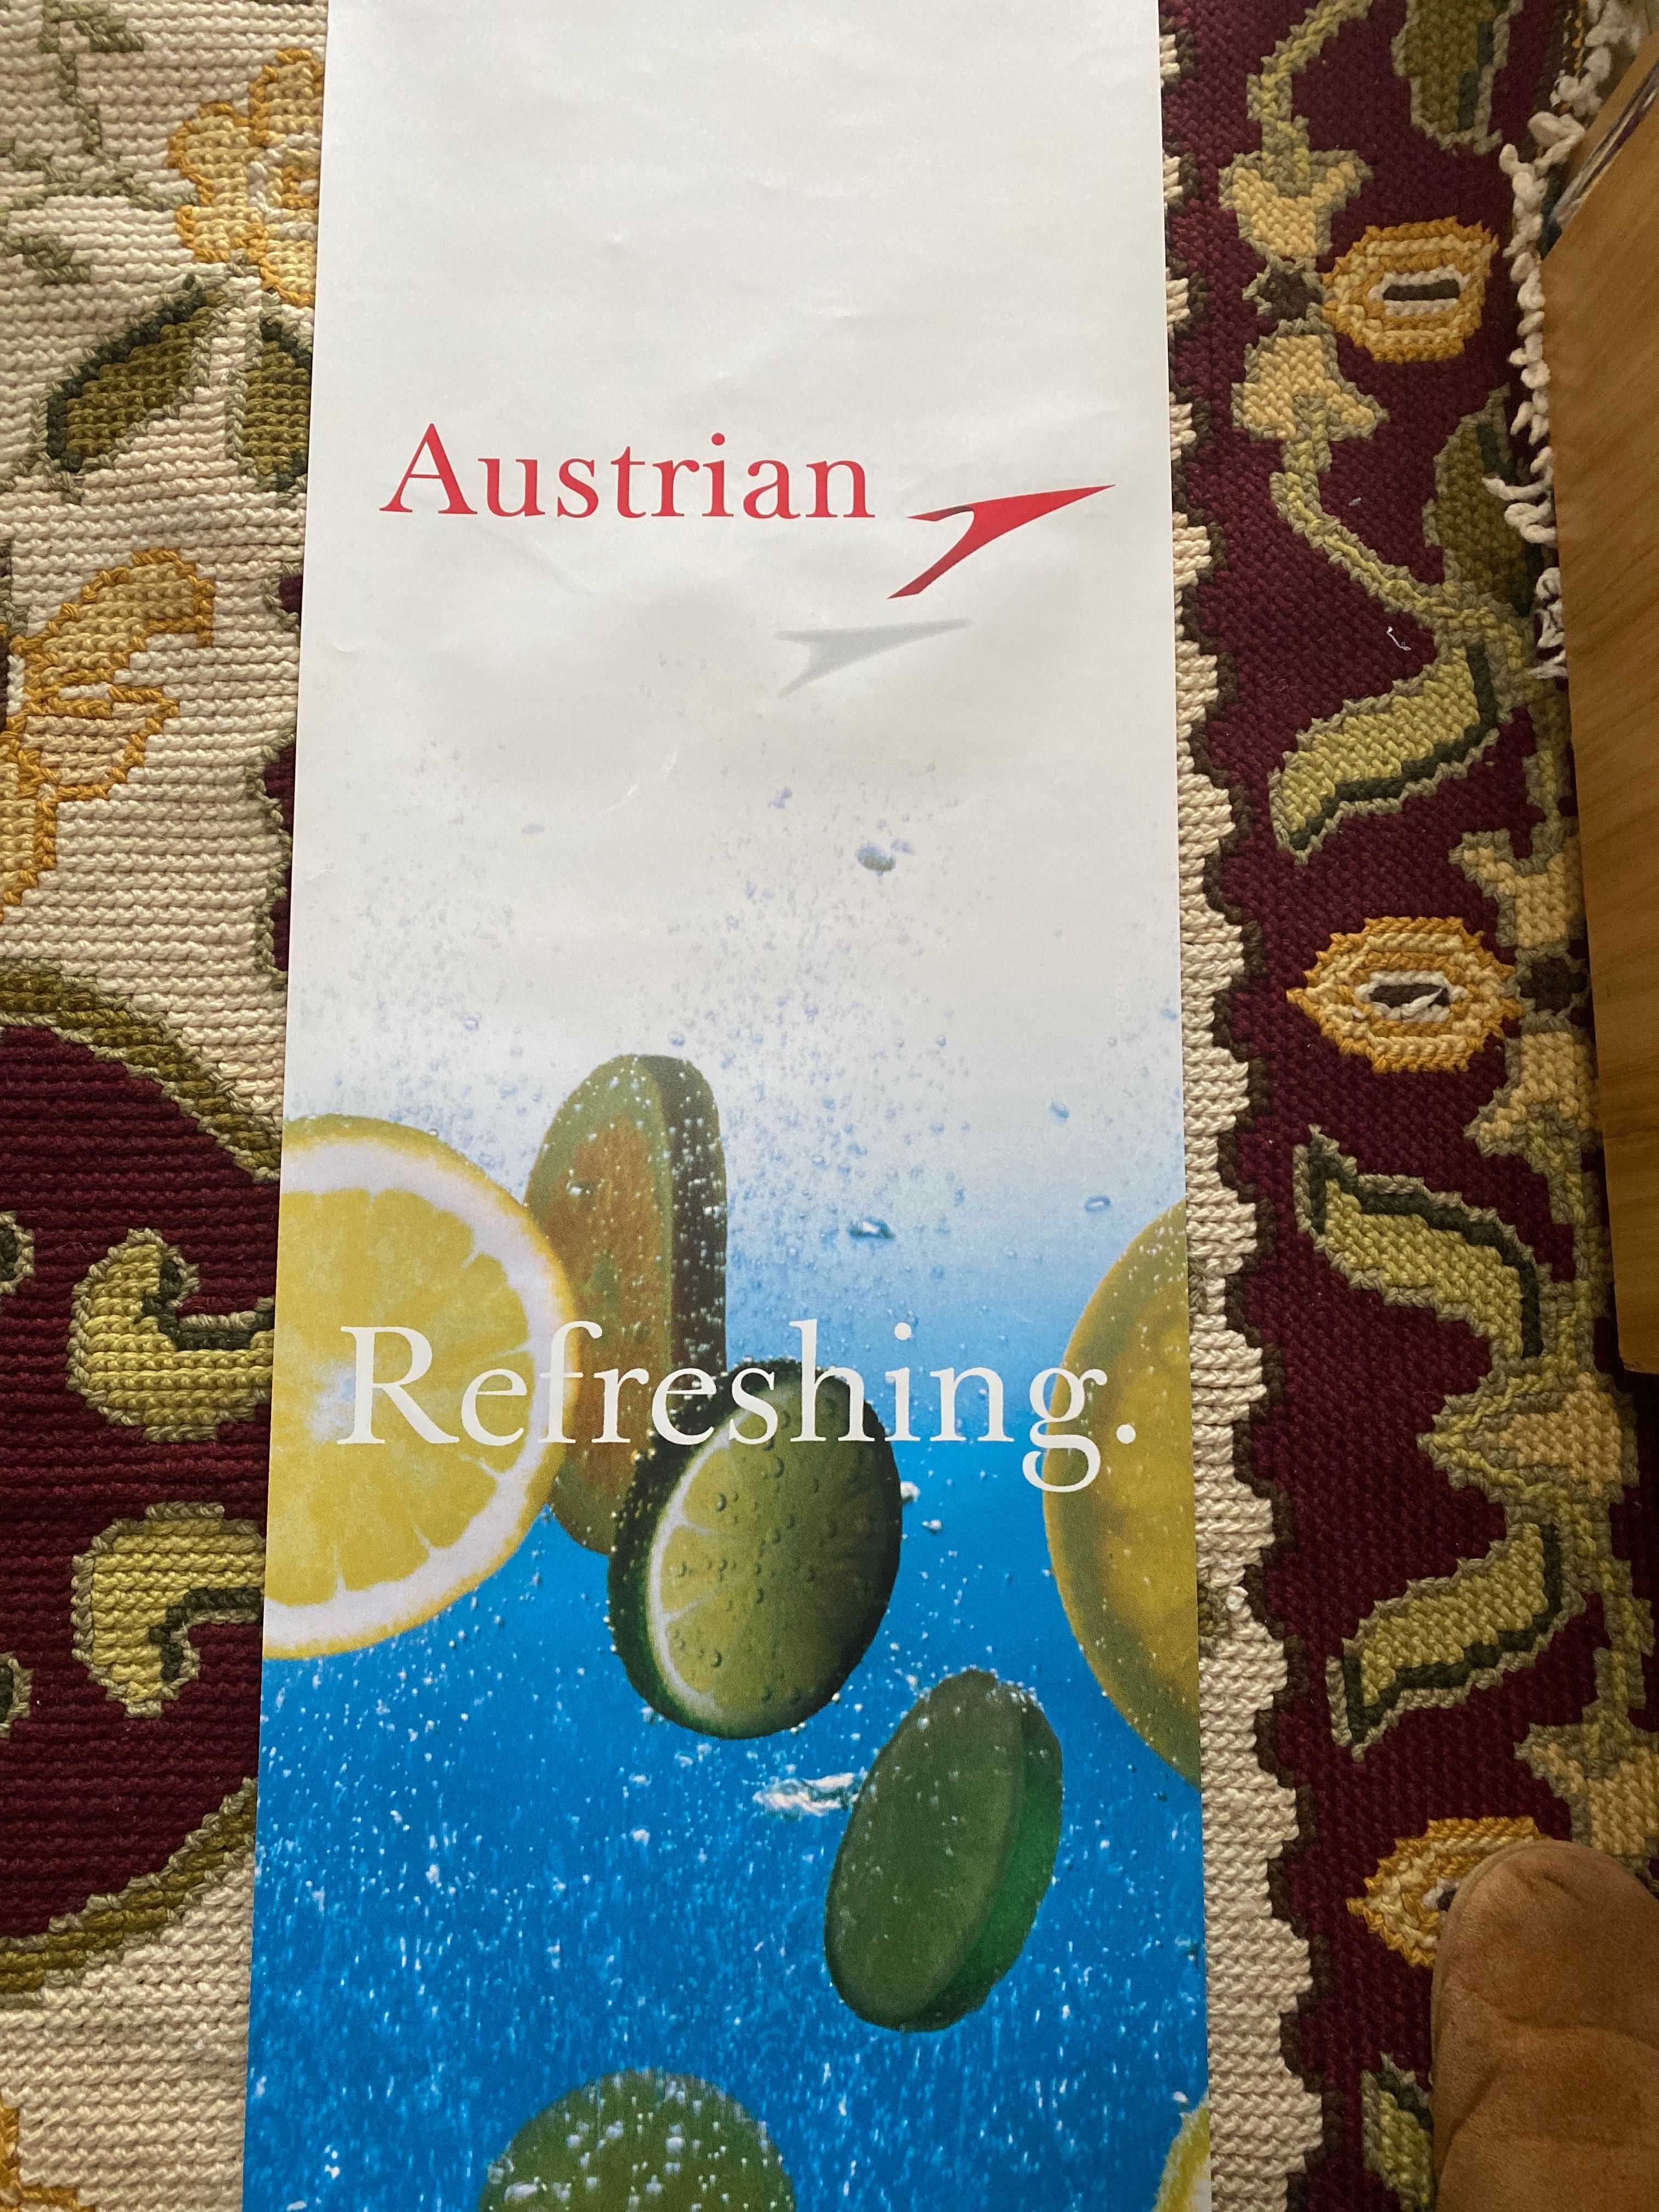 Poster raro de Exposição Austrian Airlines